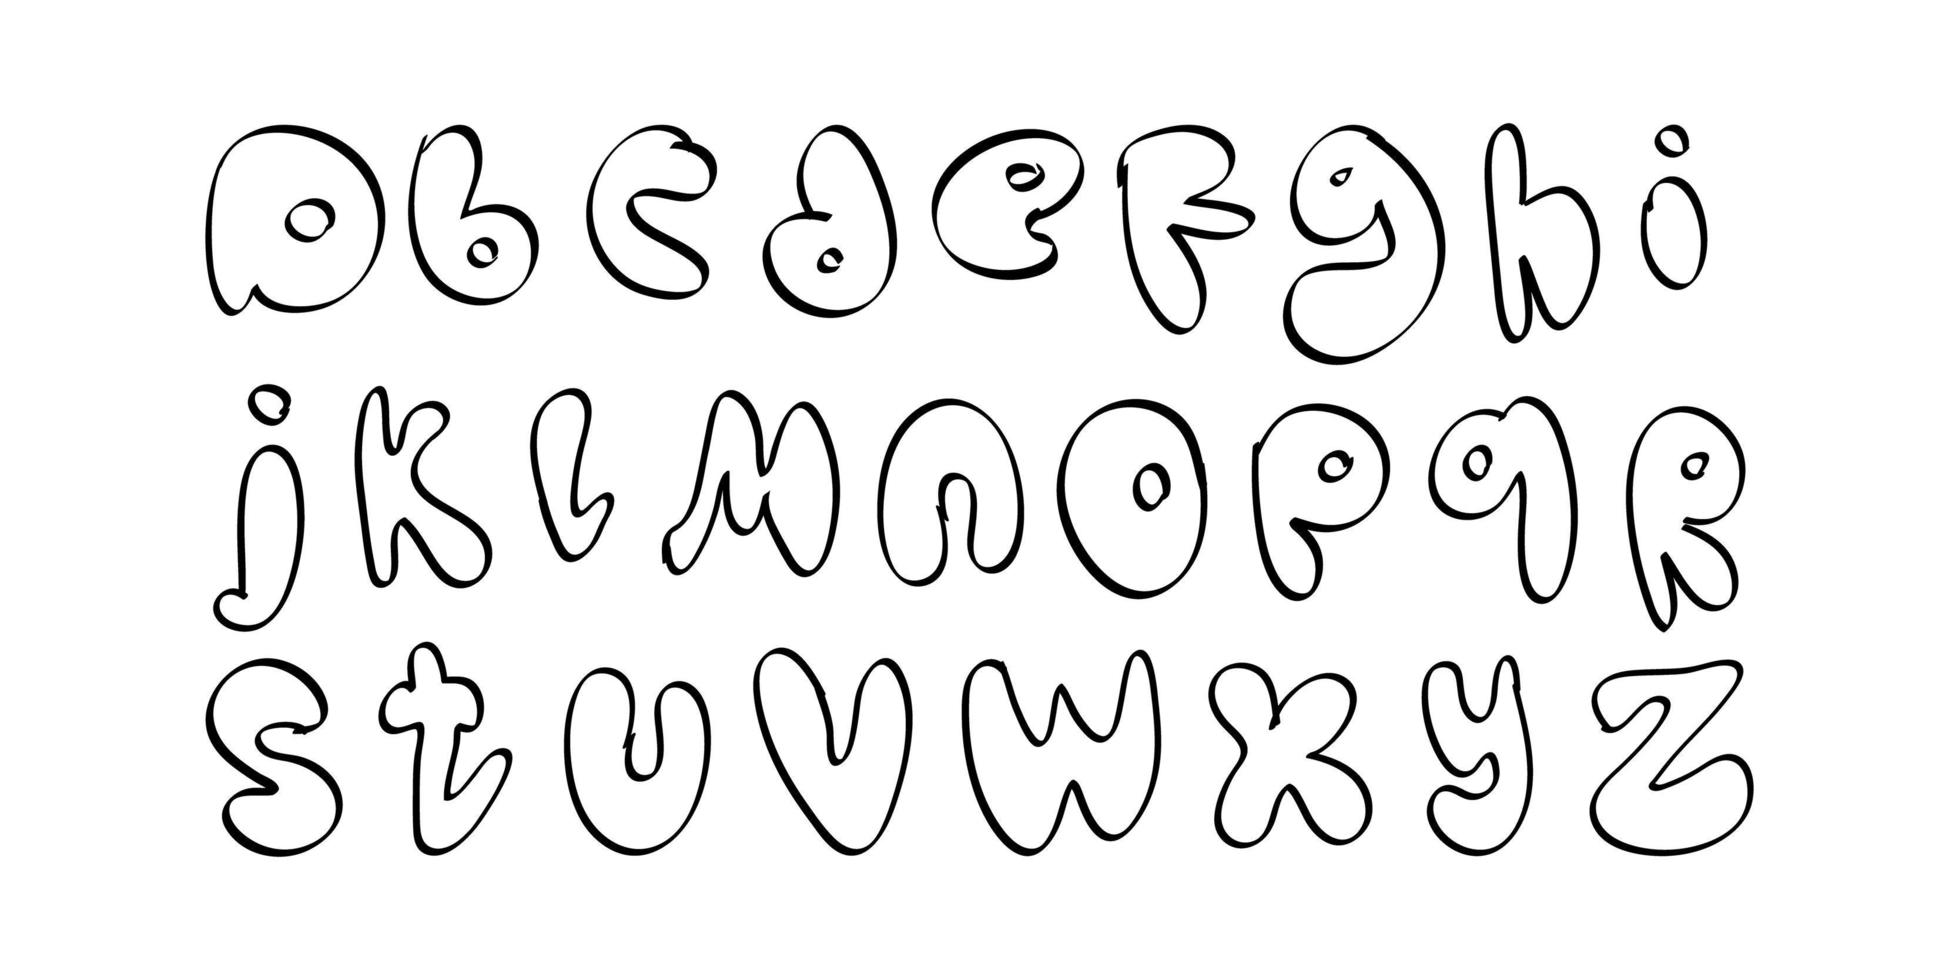 Dibujados A Mano Las Letras Decorativas Del Alfabeto Con Las Ondas